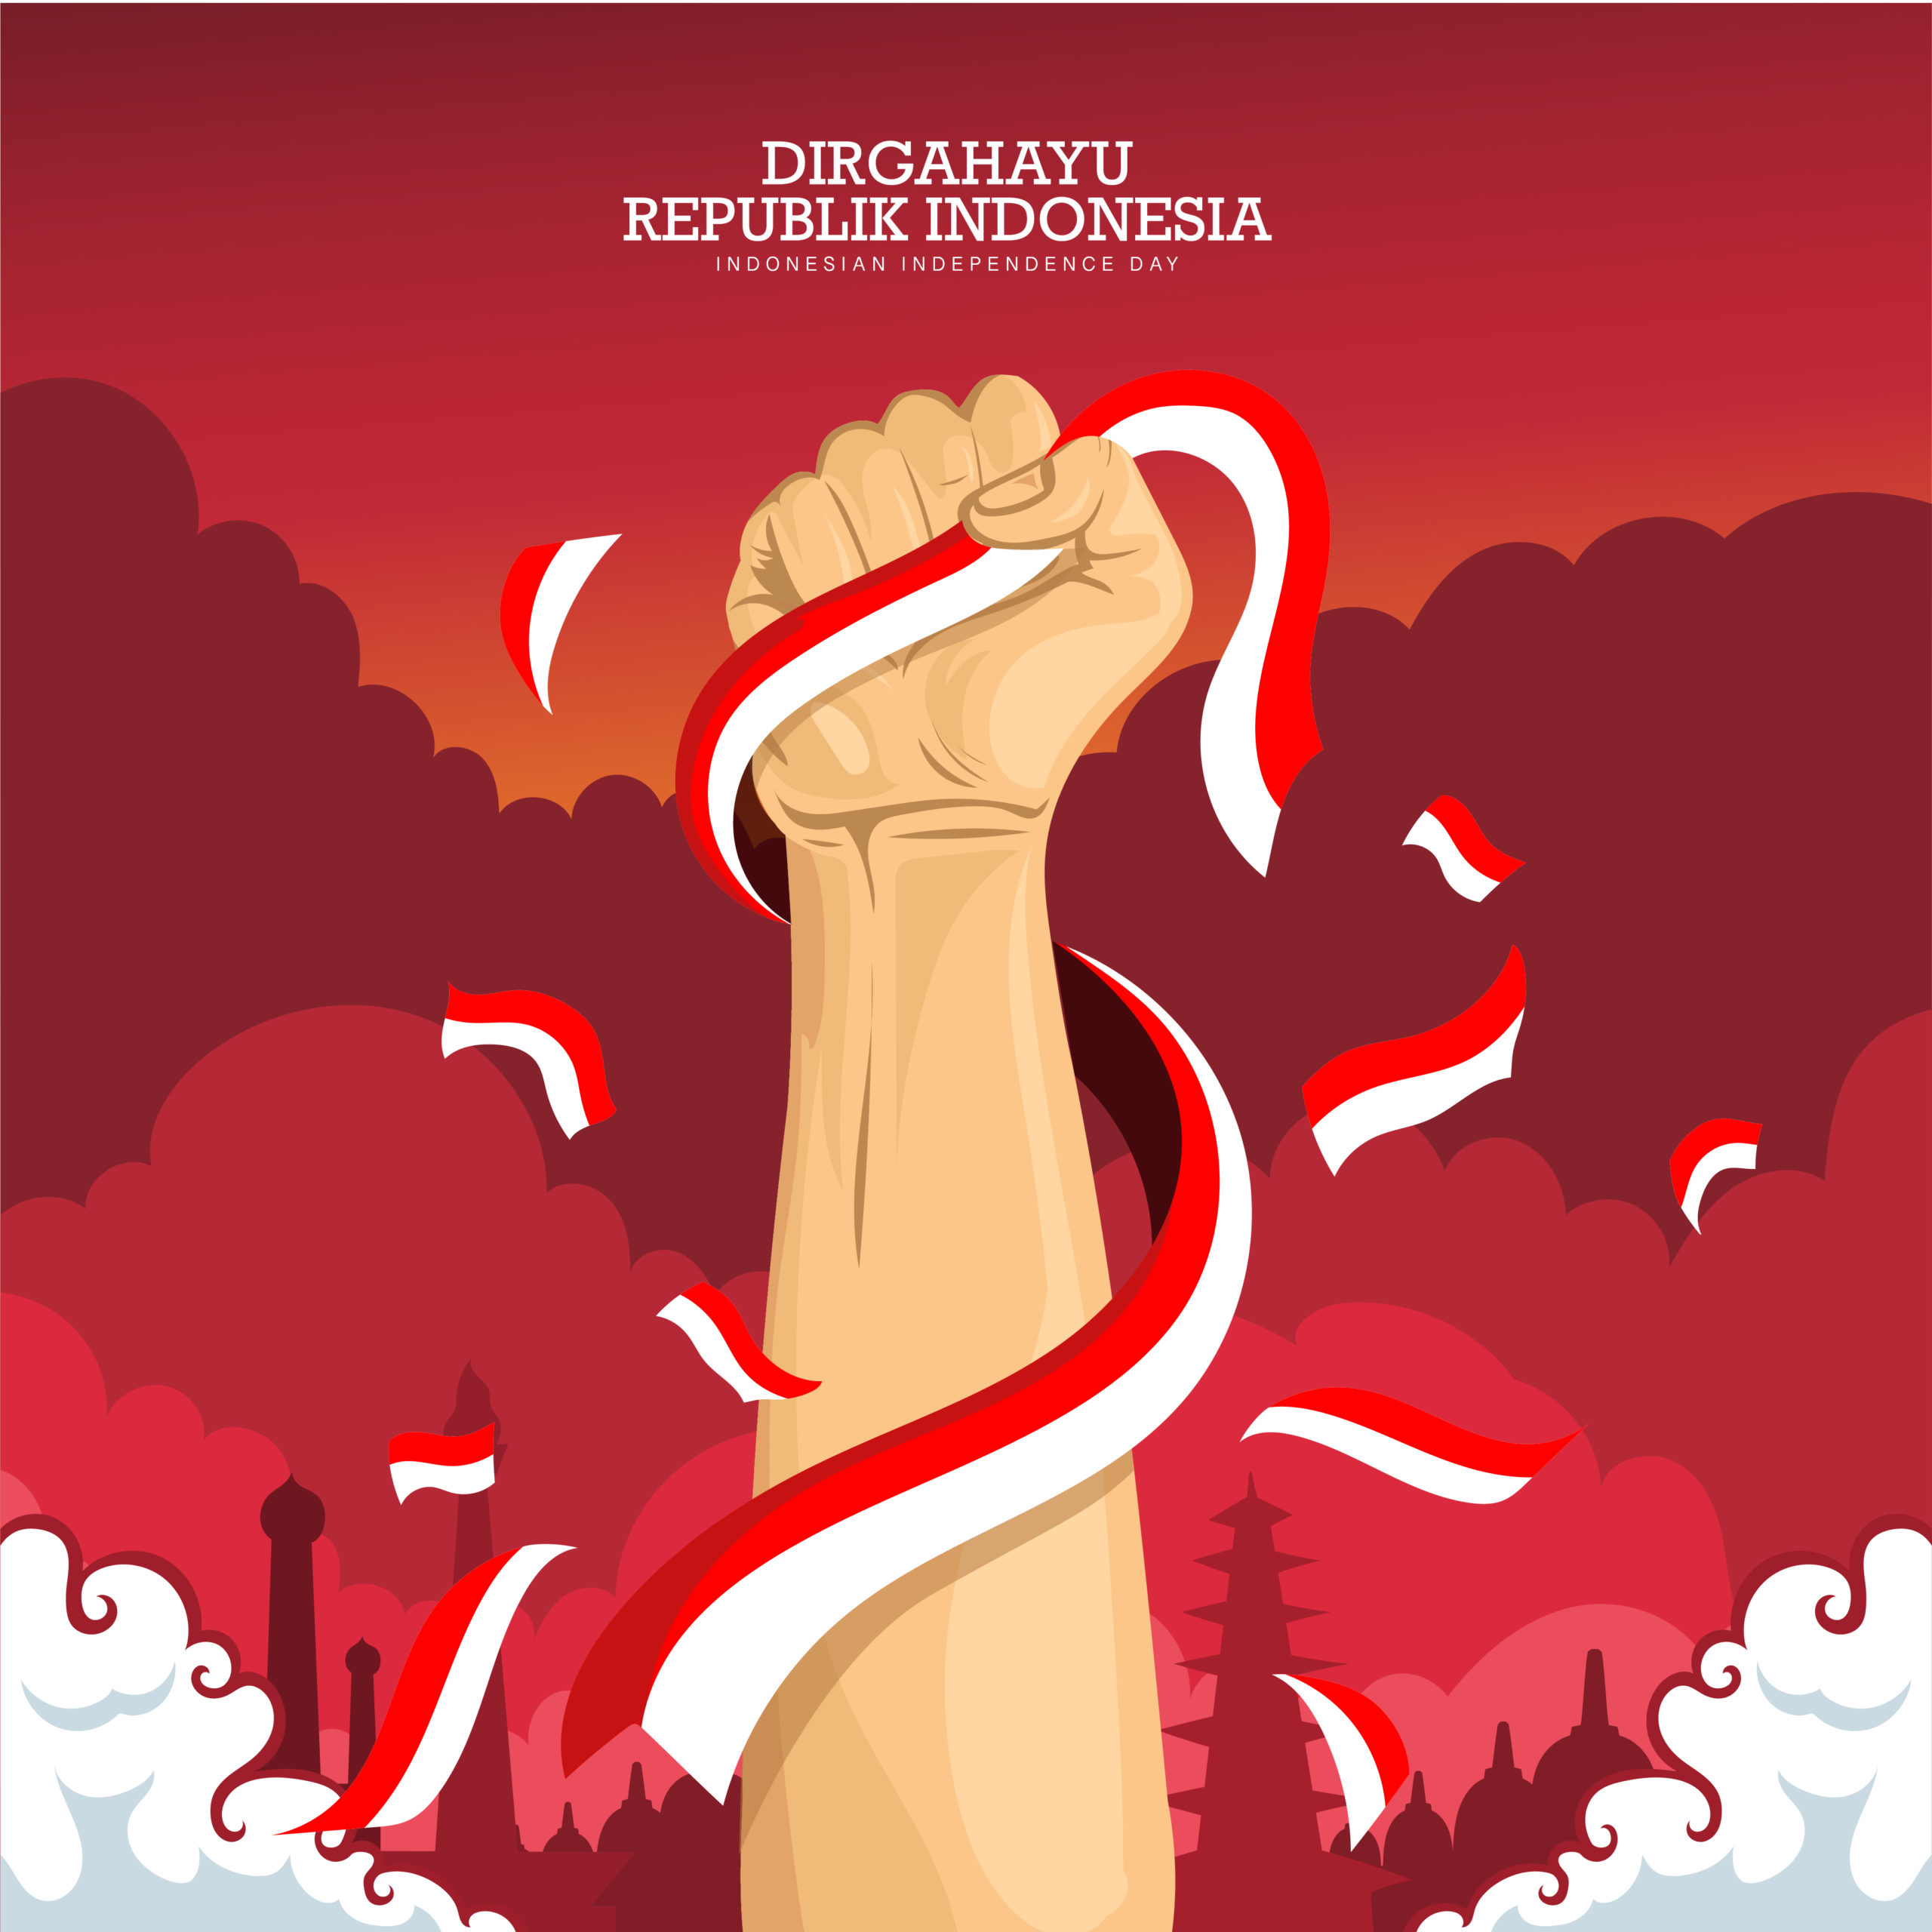 শুভ স্বাধীনতা দিবস 2022: দিরগাহায়ু কেমেরডেকান ইন্দোনেশিয়া শুভেচ্ছা, শুভেচ্ছা, ছবি, উদ্ধৃতি, ছবি, বার্তা এবং ইনস্টাগ্রাম ক্যাপশন শেয়ার করার জন্য